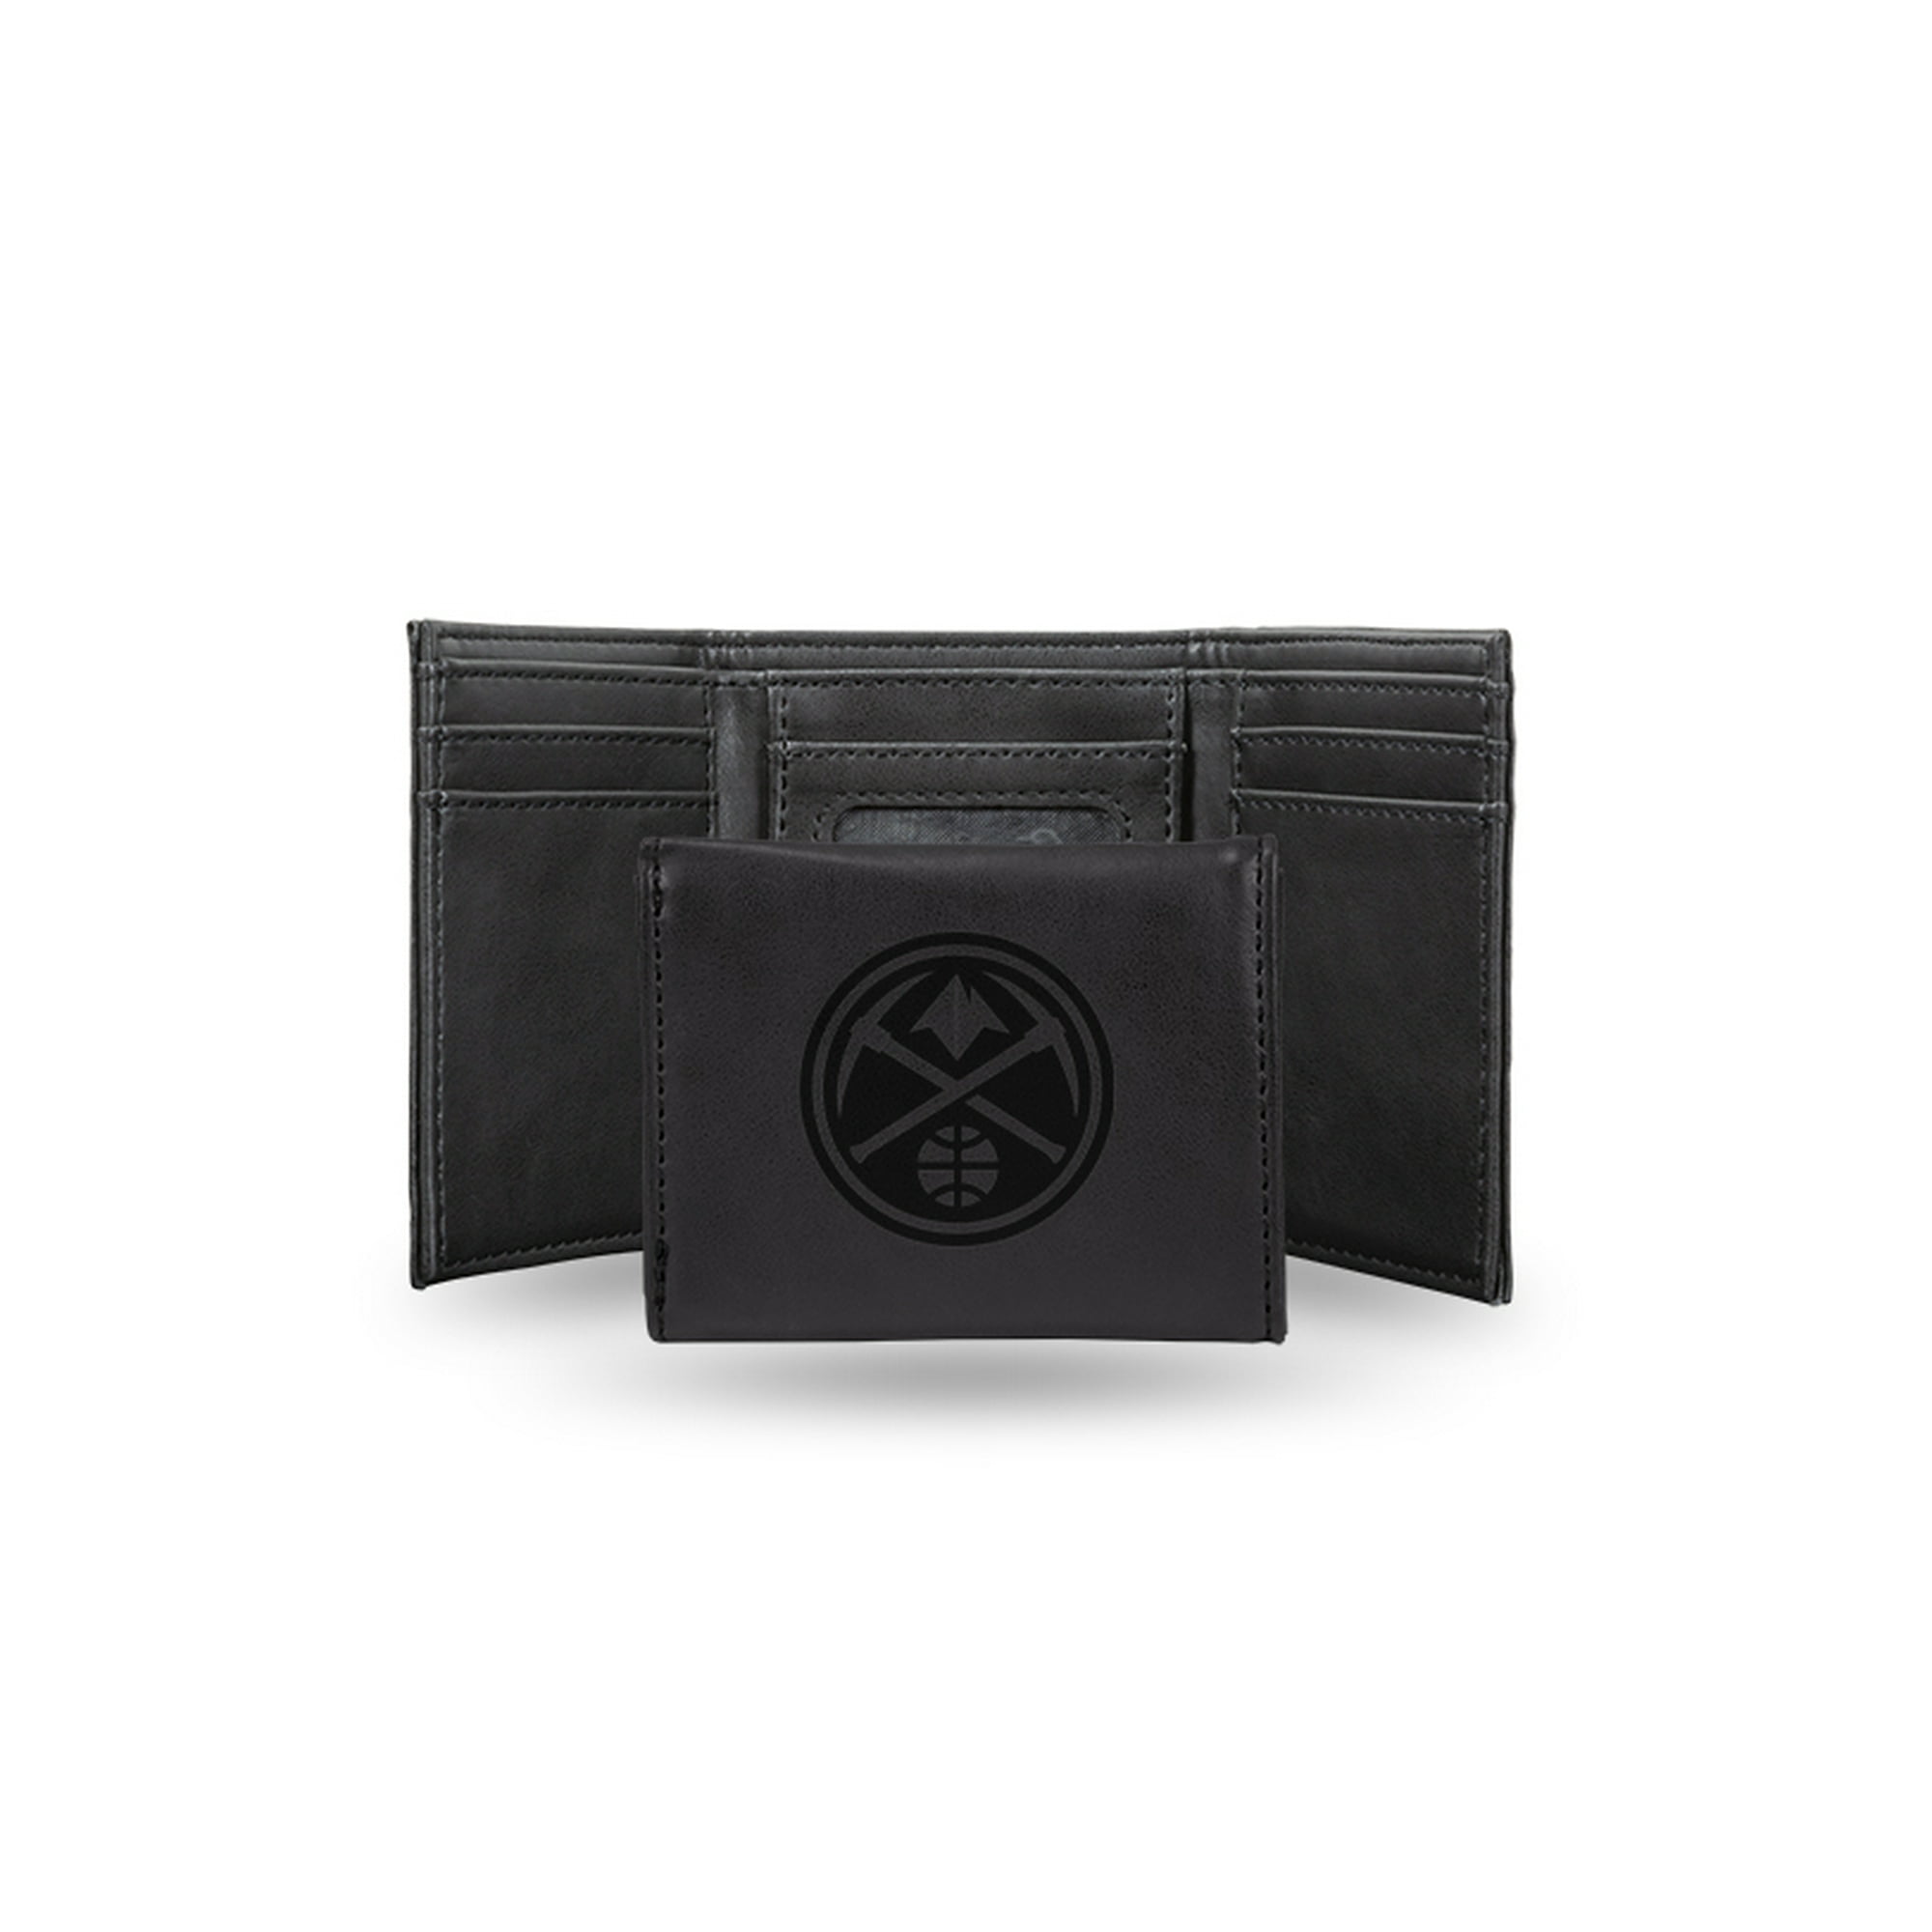 Denver Leather Trifold Wallet